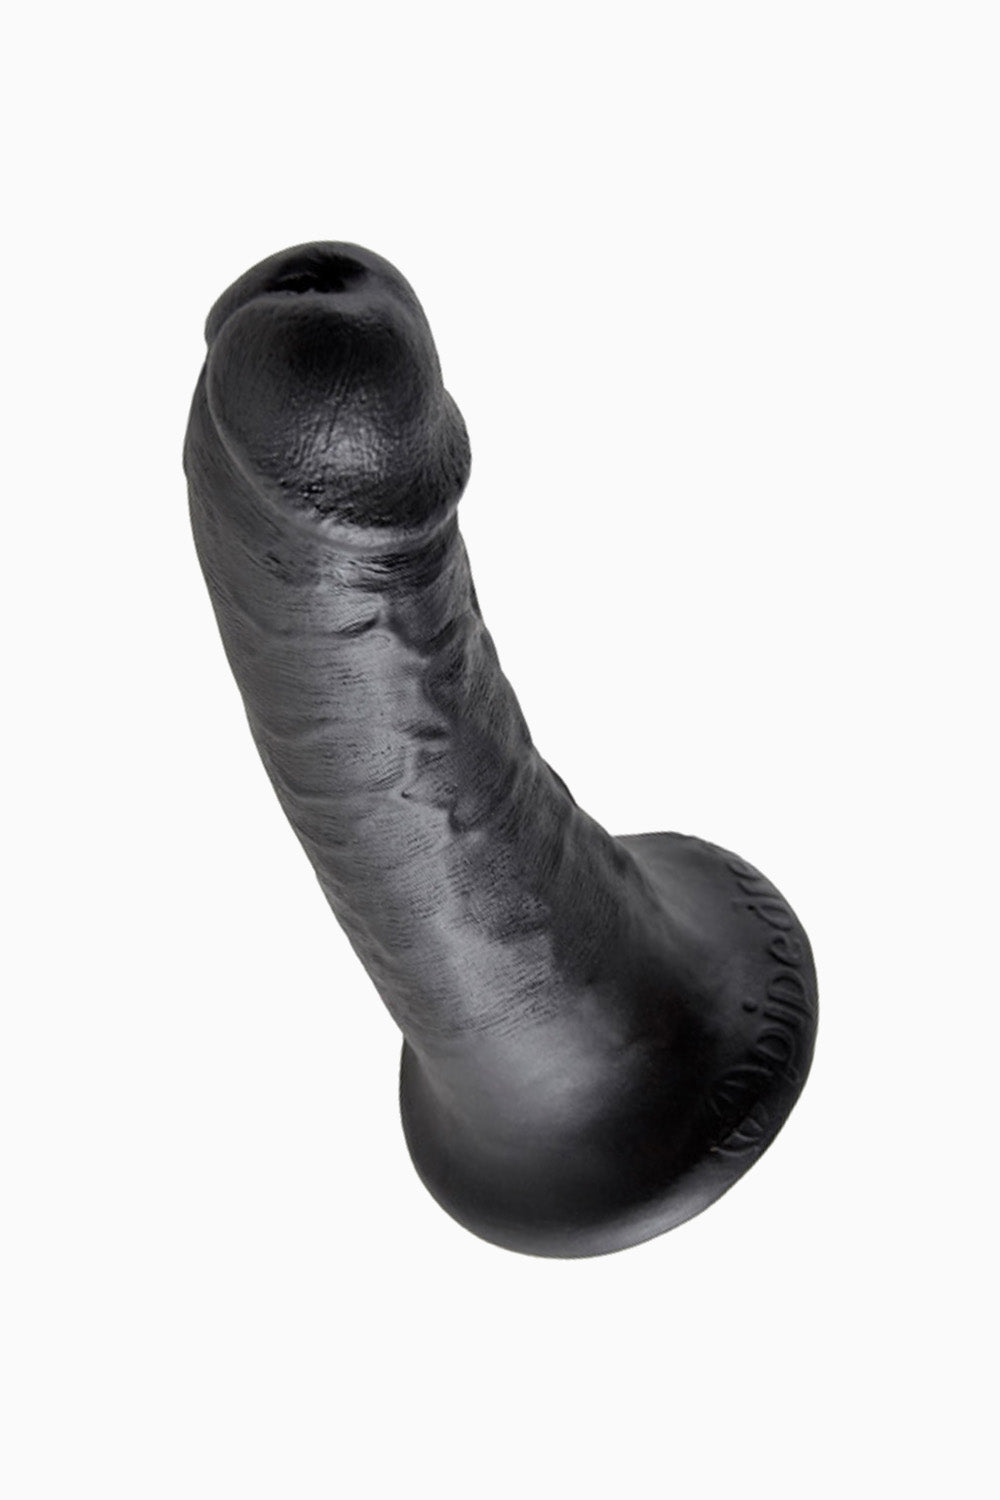 King Cock Dildo Black, 6 inch